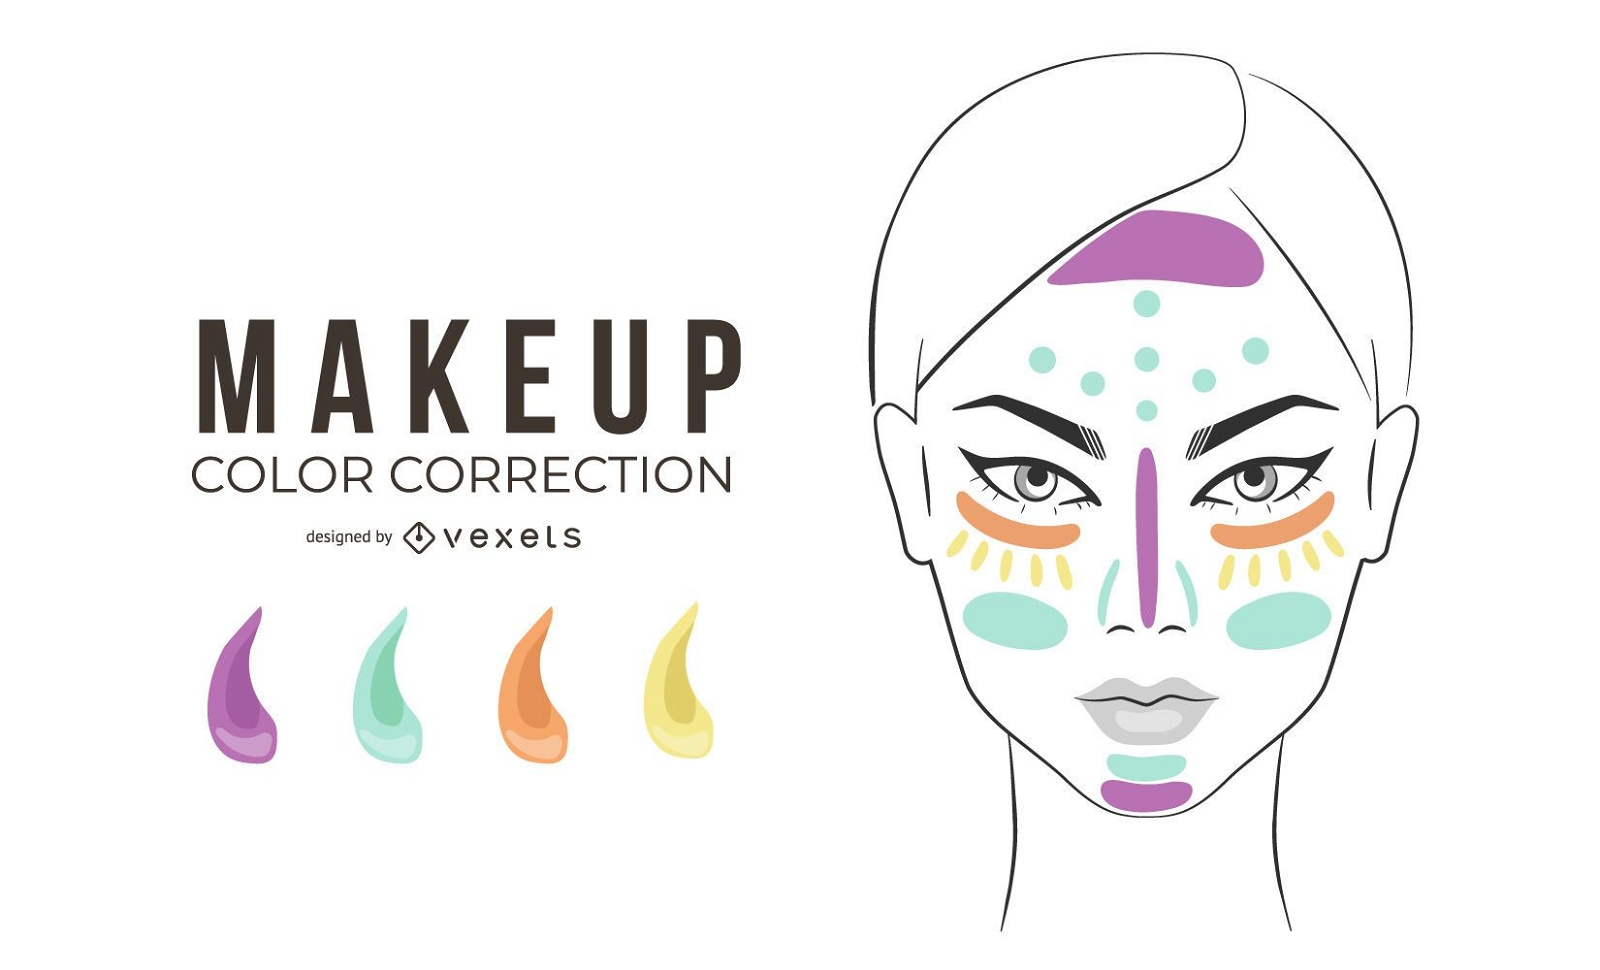 Abbildung der Make-up-Farbkorrektur